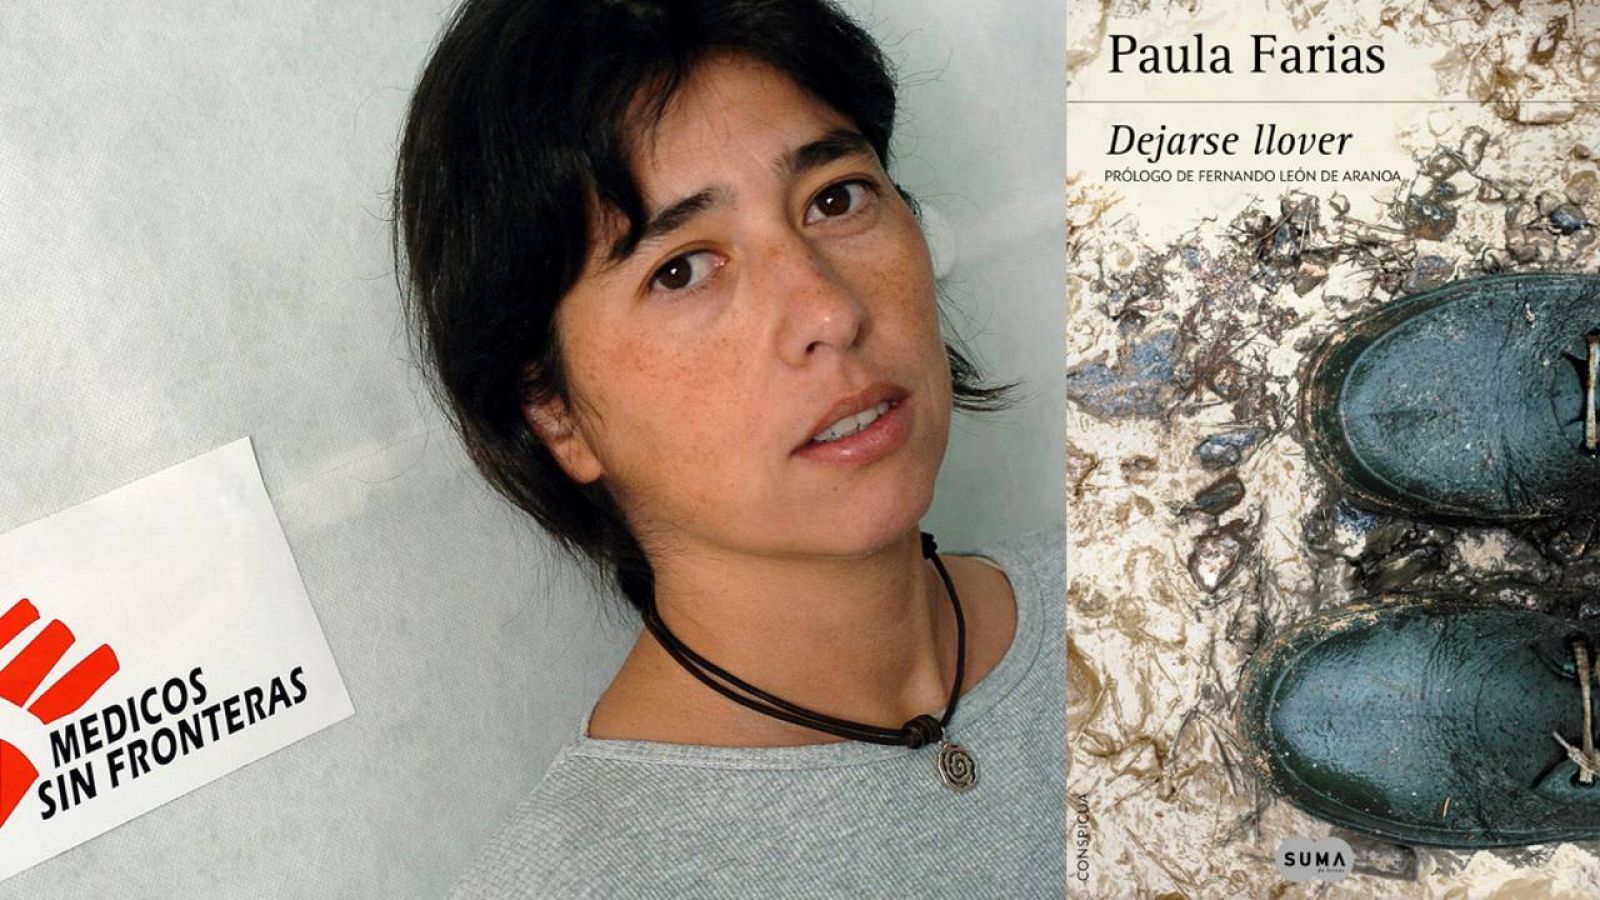  Paula Farias y la portada de su novela 'Dejarse llover'